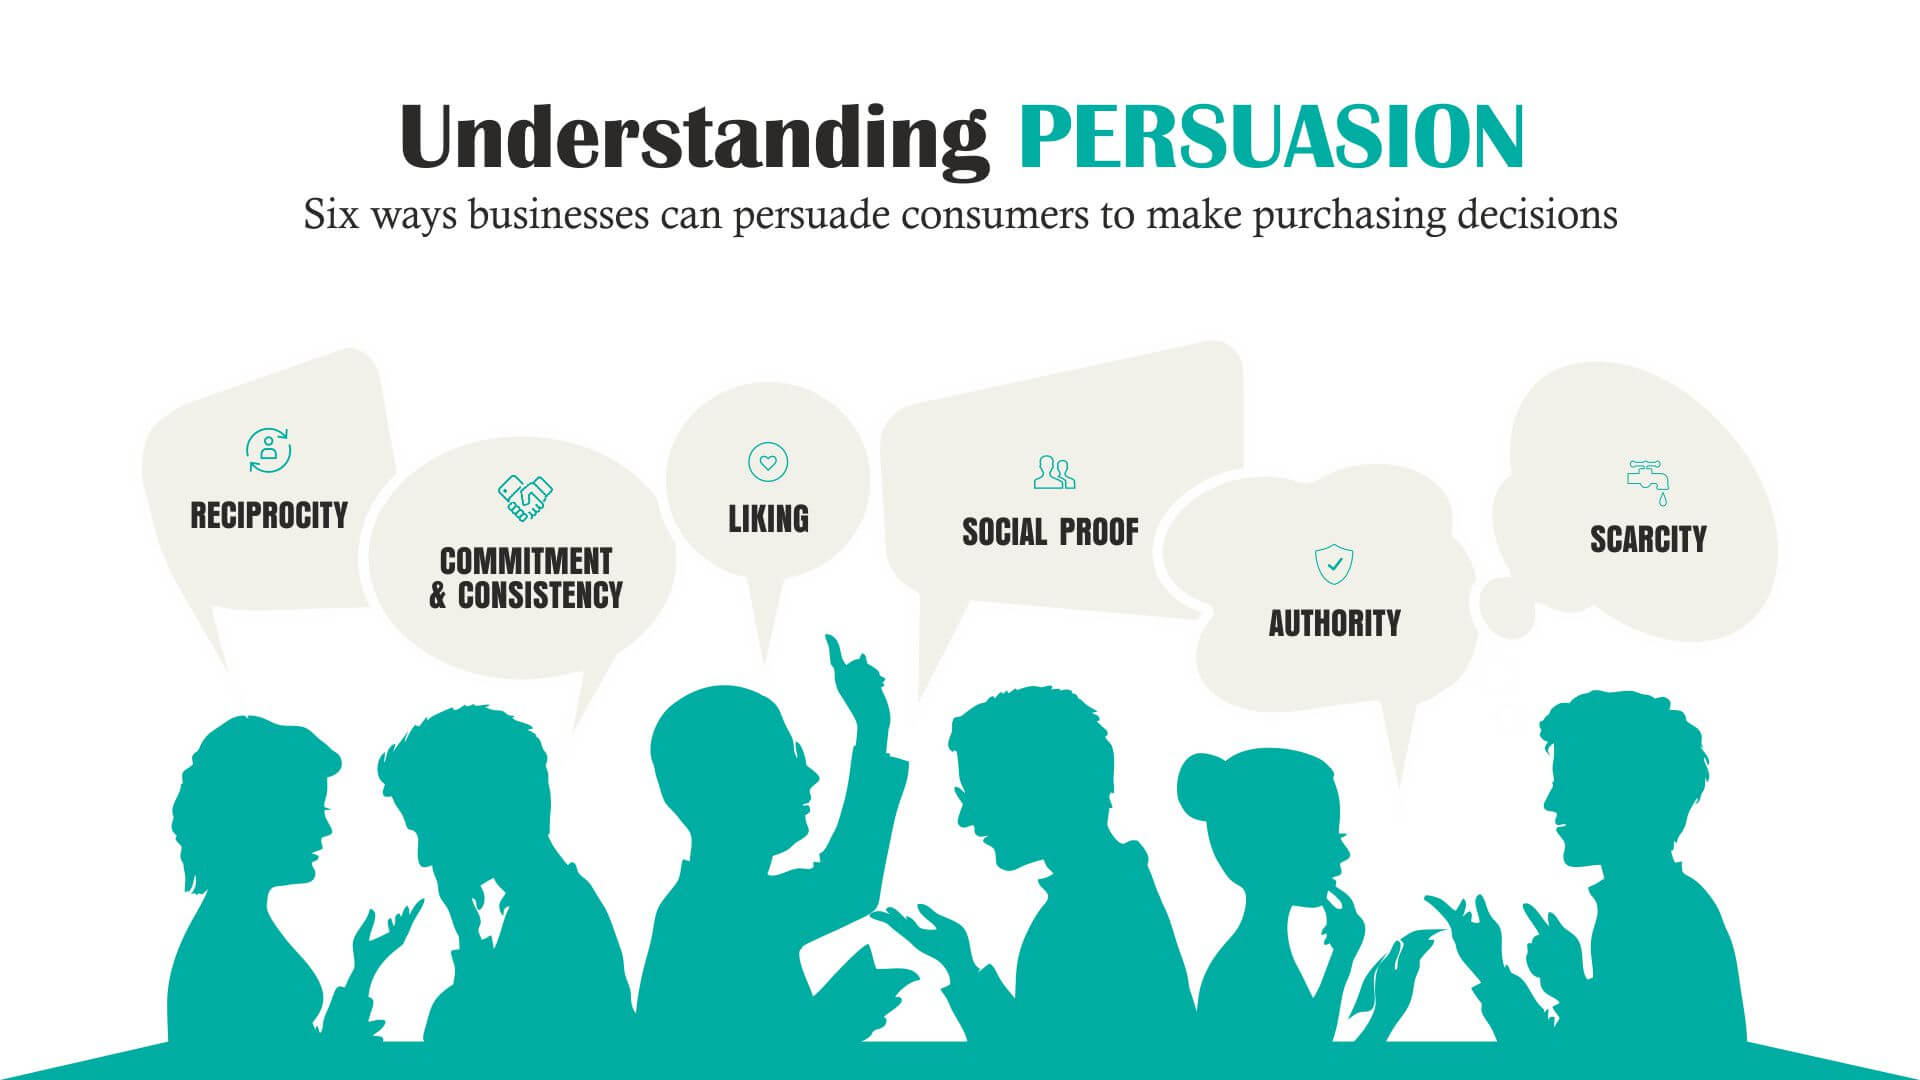 6 secretos de persuasión que te ayudarán a vender más